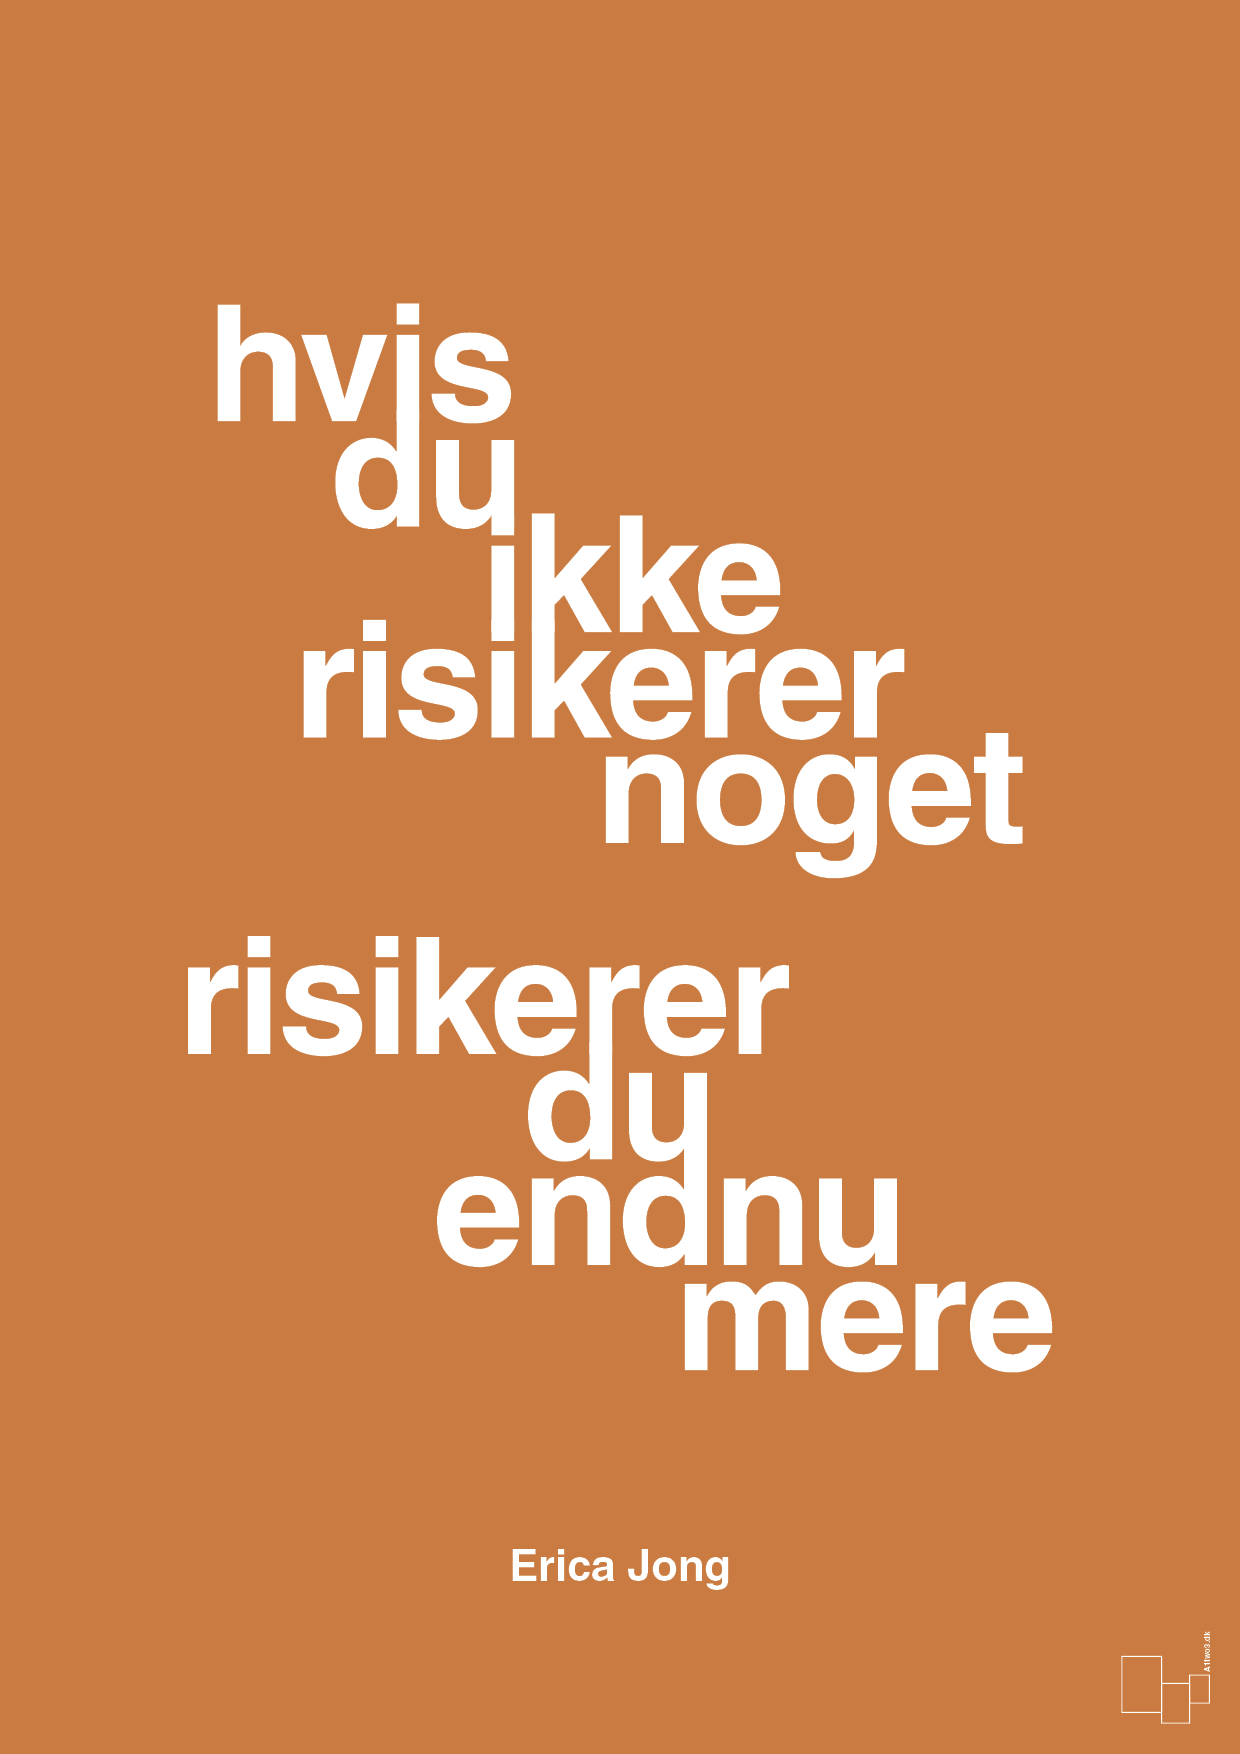 hvis du ikke risikerer noget risikerer du endnu mere - Plakat med Citater i Rumba Orange